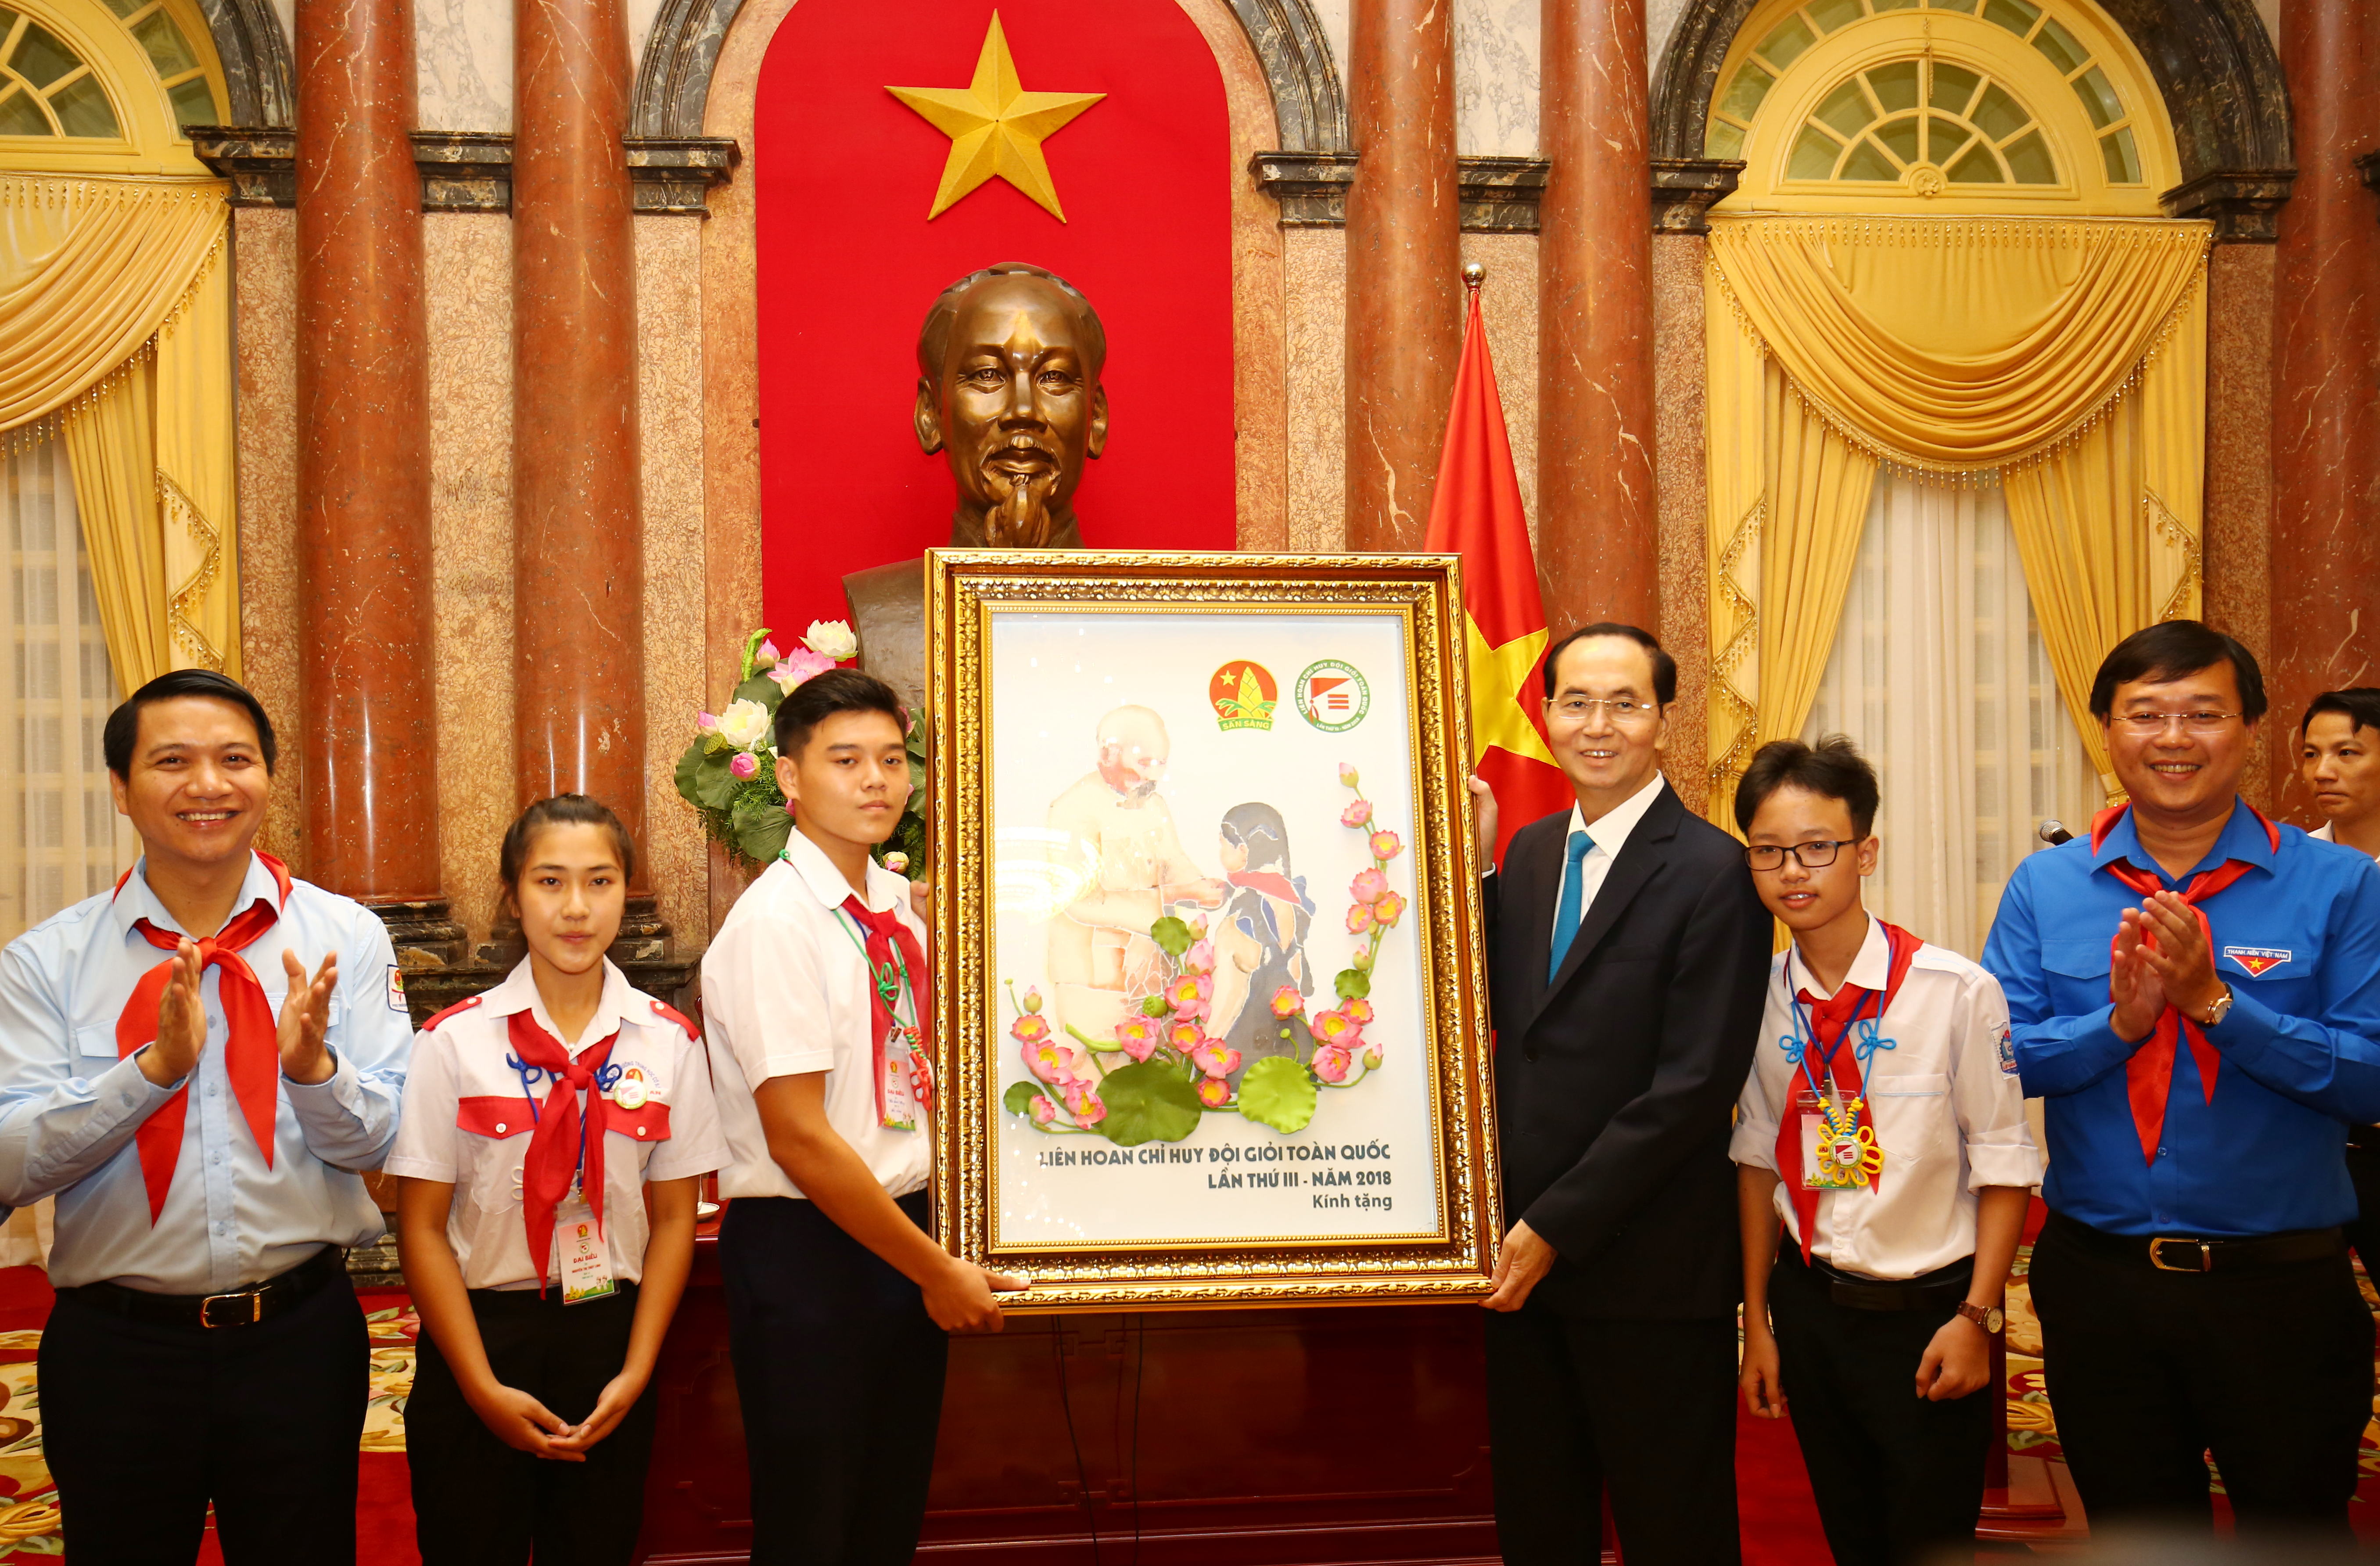 Dịp này, các đại biểu Chỉ huy Đội giỏi đã gửi tặng Chủ tịch nước Trần Đại Quang bức tranh “Bác Hồ với thiếu nhi” do chính tay các em tự vẽ